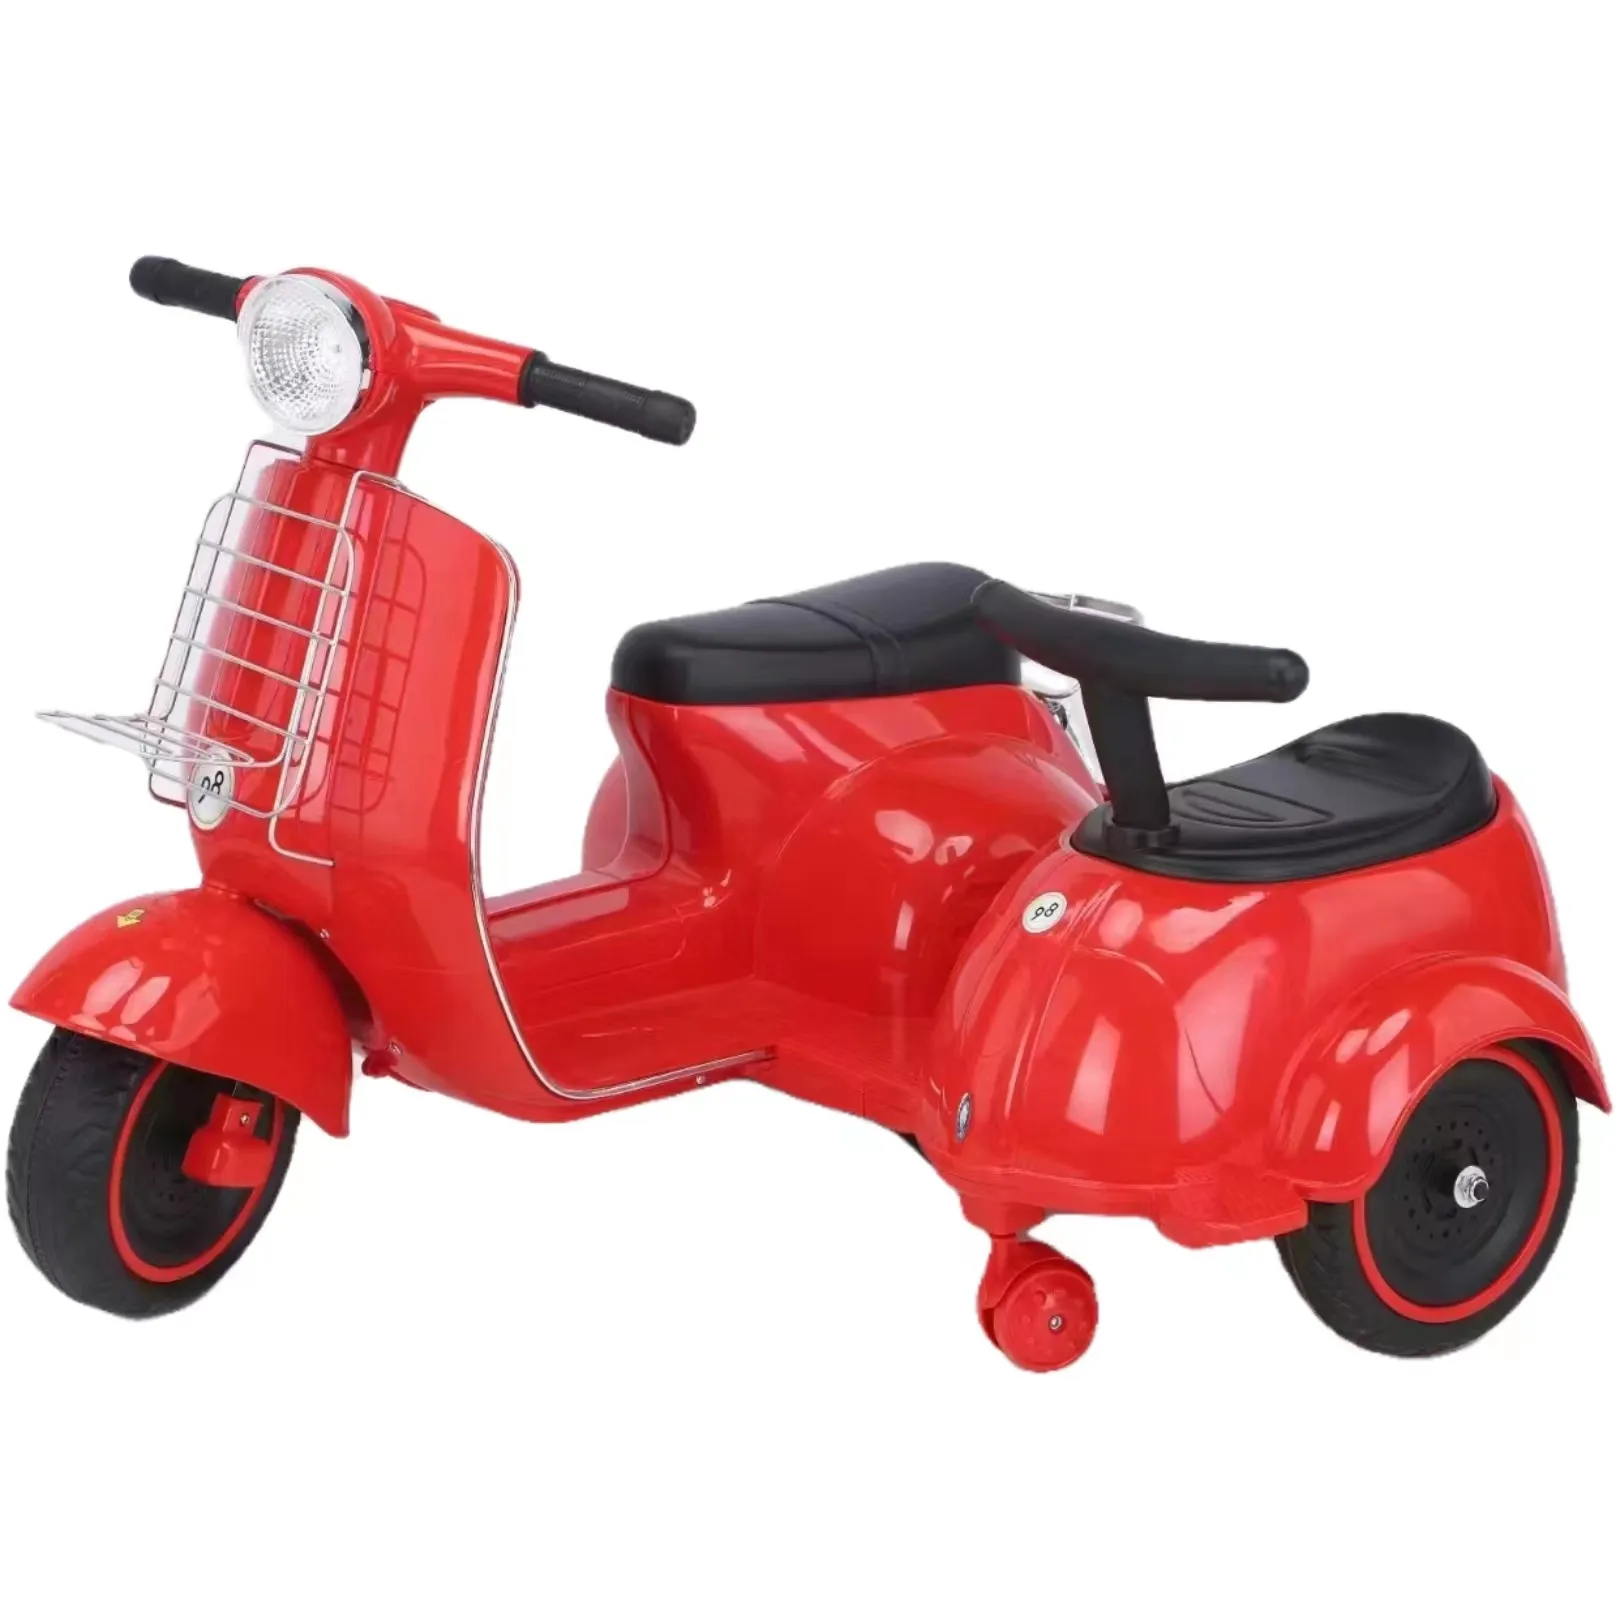 Vente de moto électrique pour enfants, jouets pour enfants, mini-moto à monter sur la voiture, fabriqué en chine